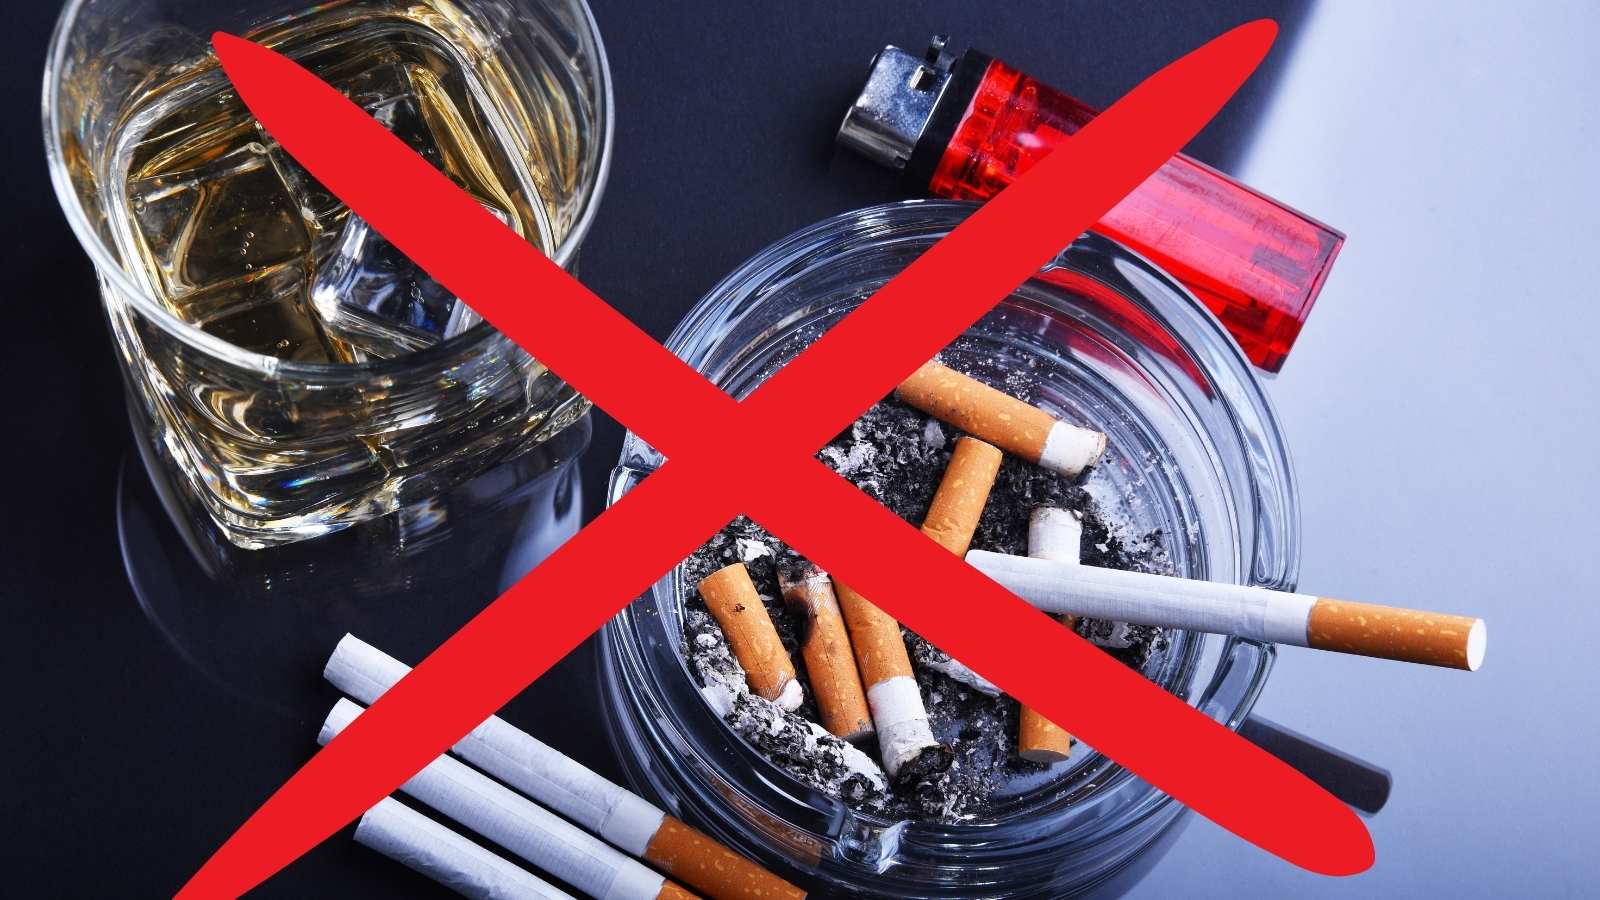 Une semaine après une implantation dentaire, la consommation d'alcool et de tabac est interdite.